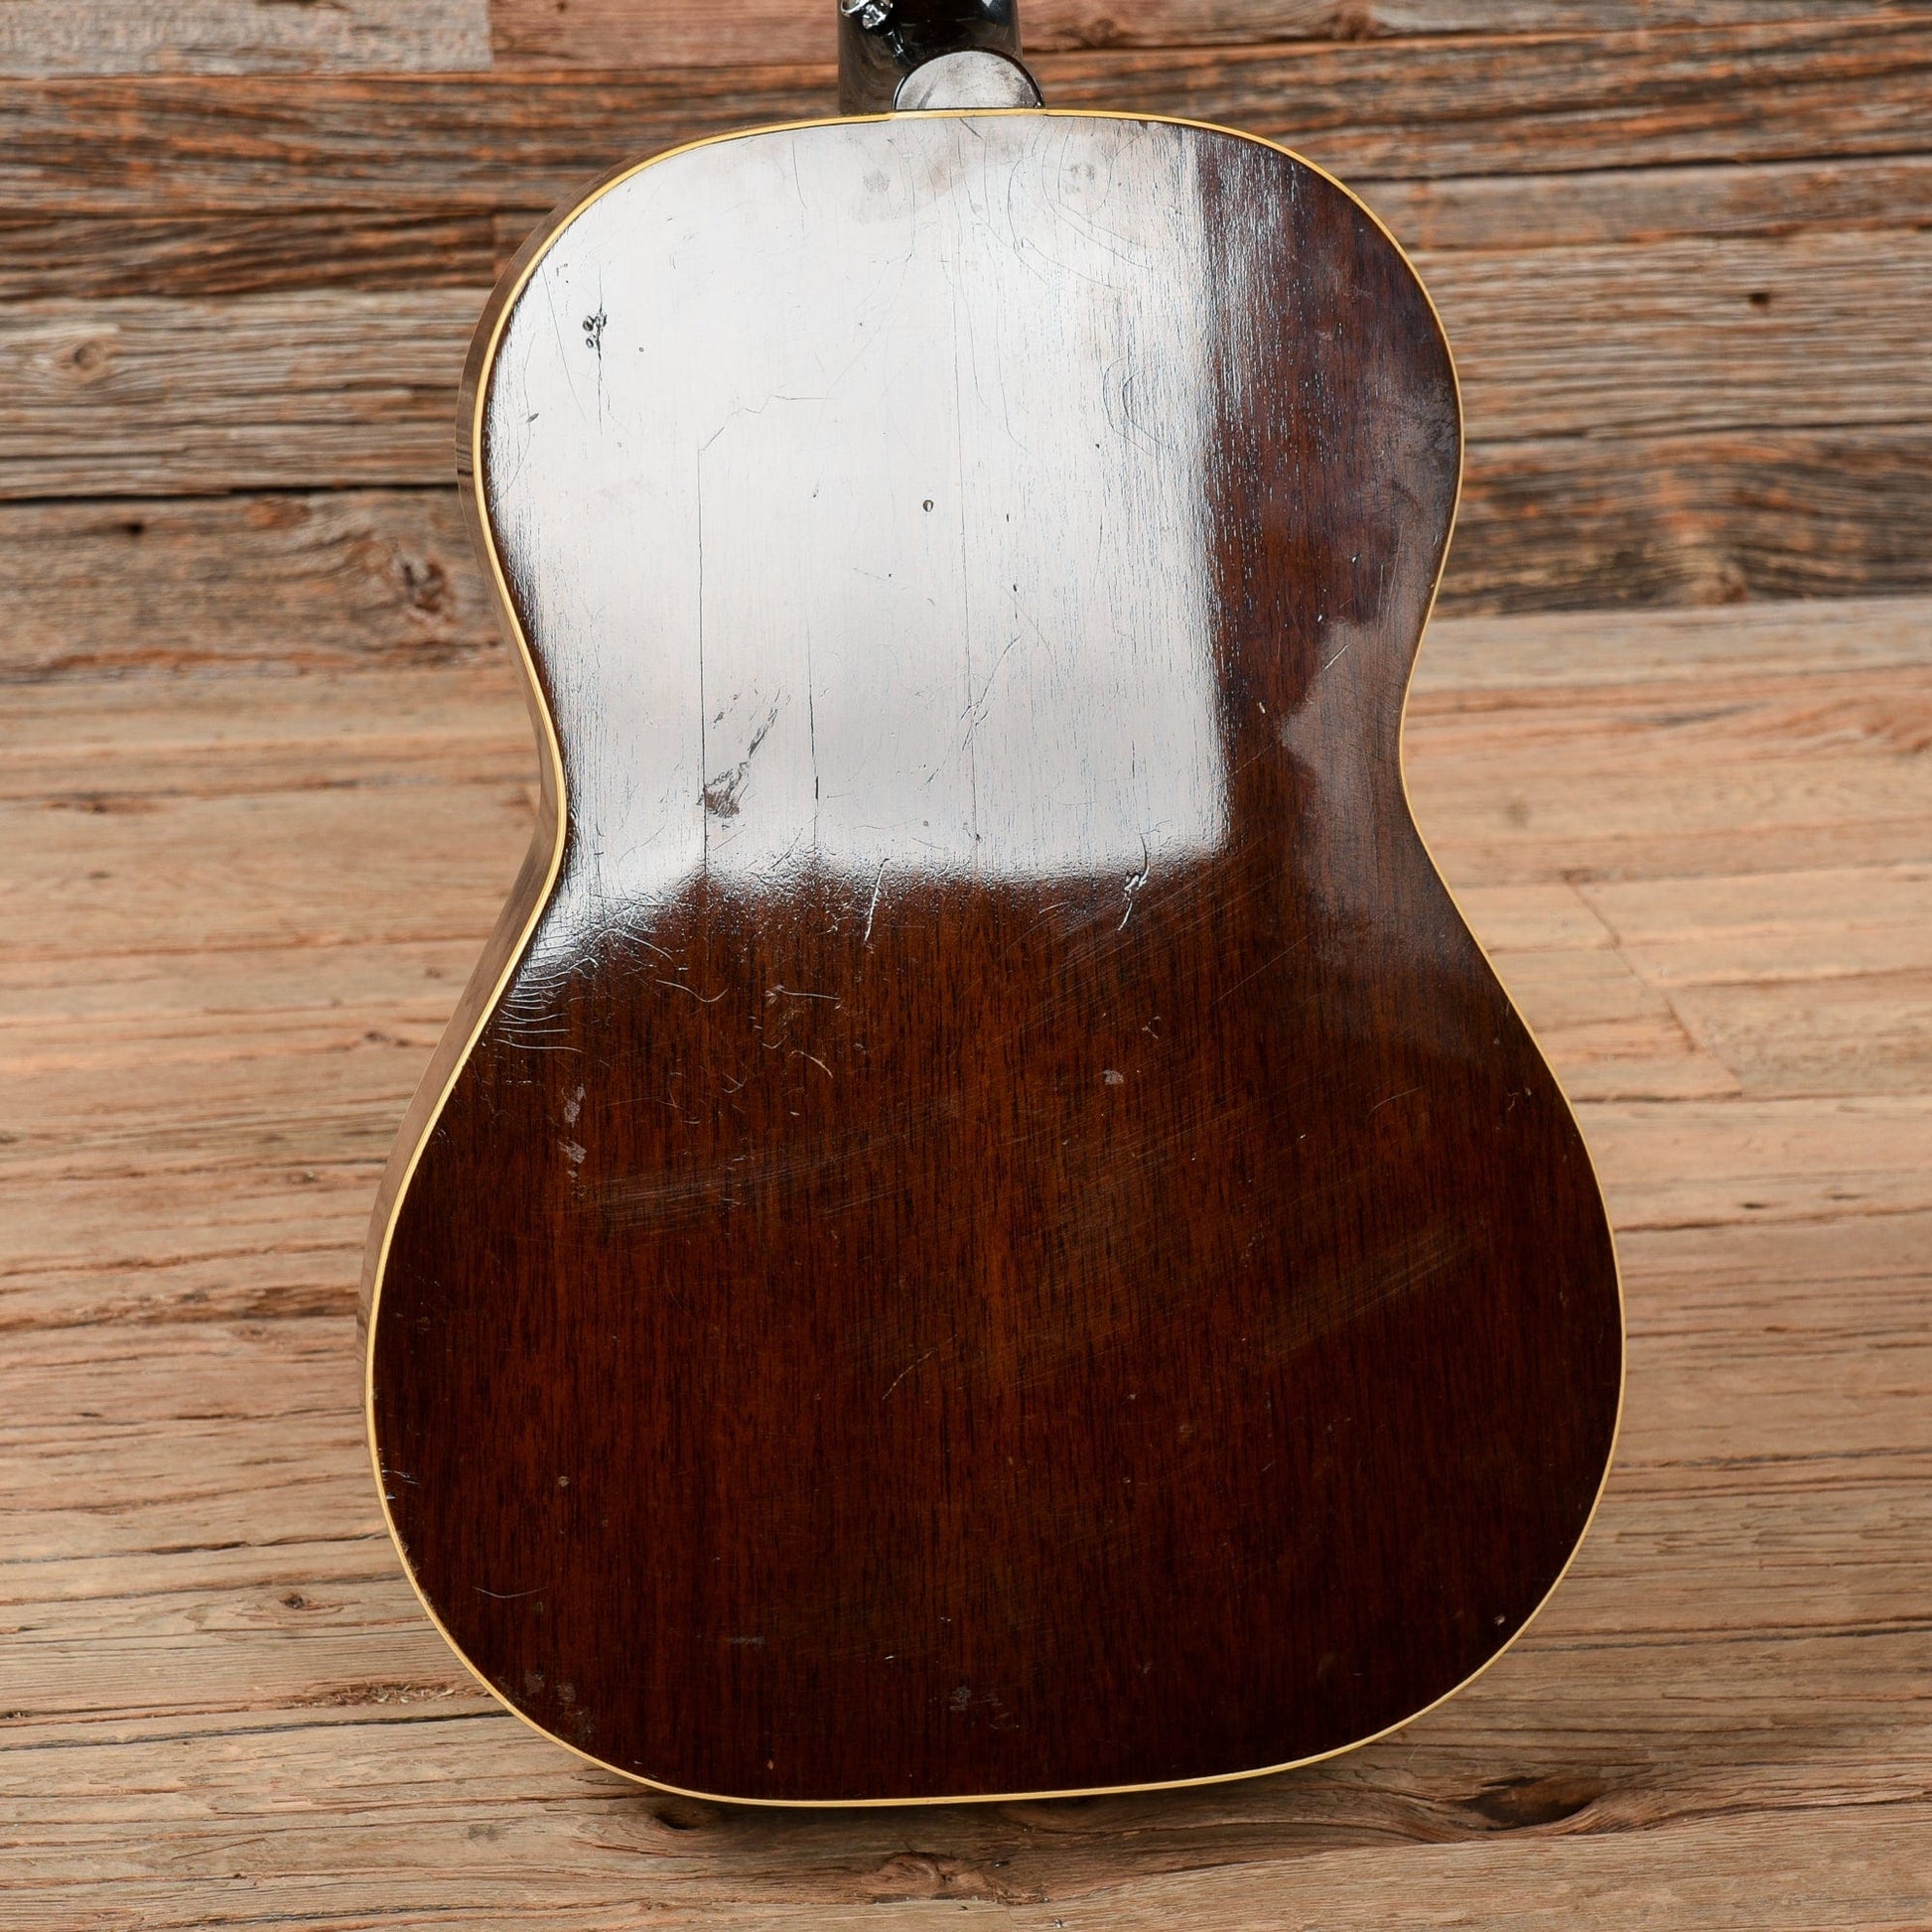 Gibson LG-1 Sunburst 1963 Acoustic Guitars / Concert